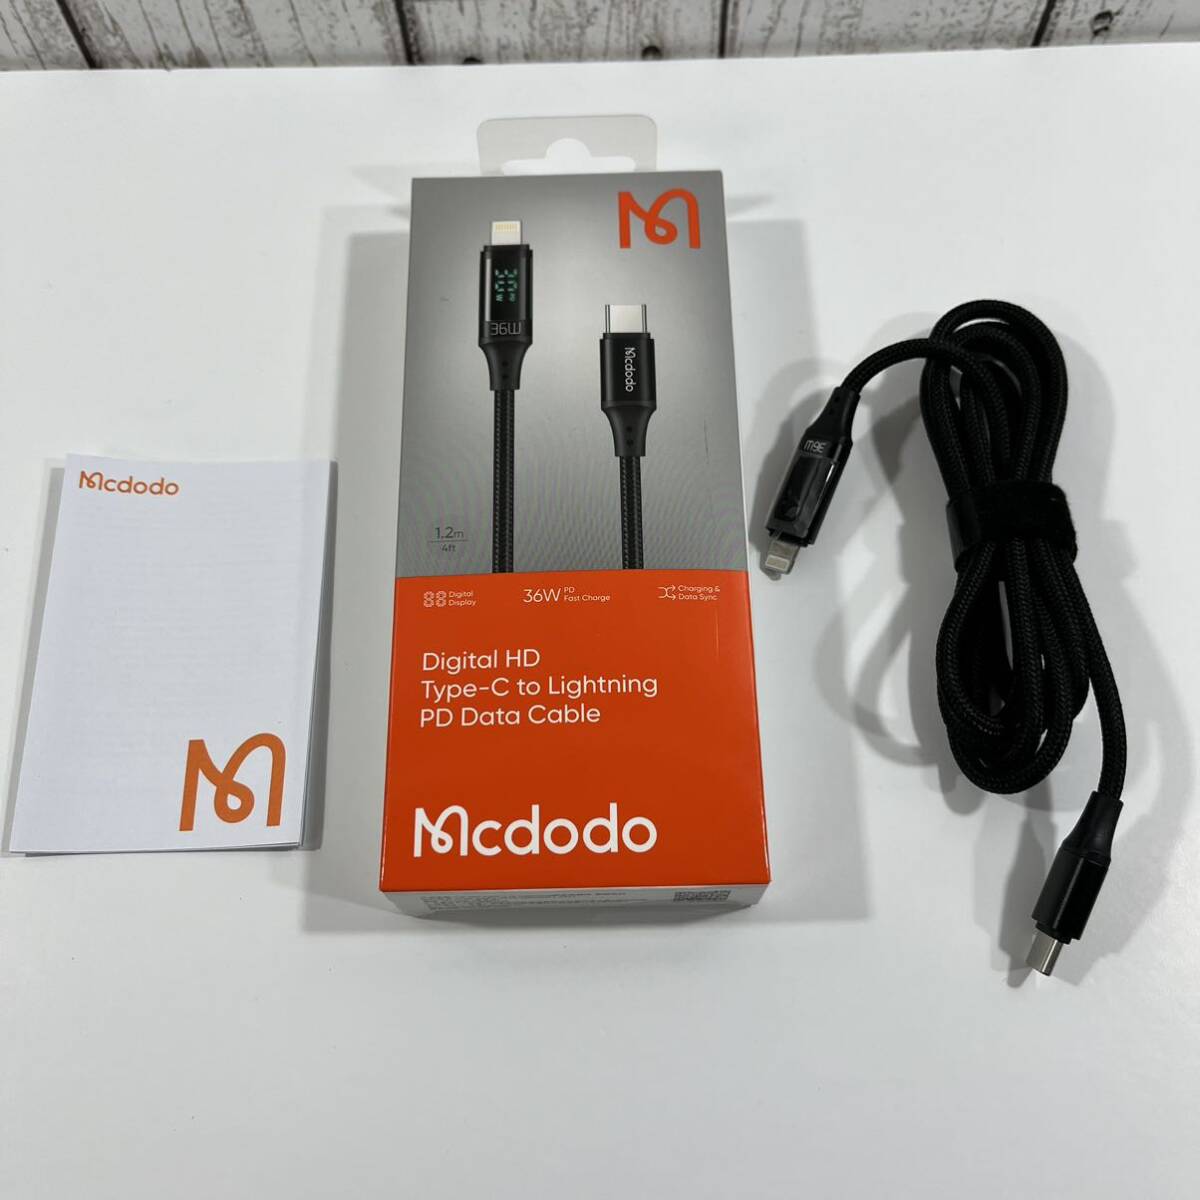 Mcdodo USB Type-C ライトニングケーブル 出力スクリーン 1.2m 36W PD急速充電 高速データ転送 充電ケーブル スマートデュアルチップ搭載_画像7